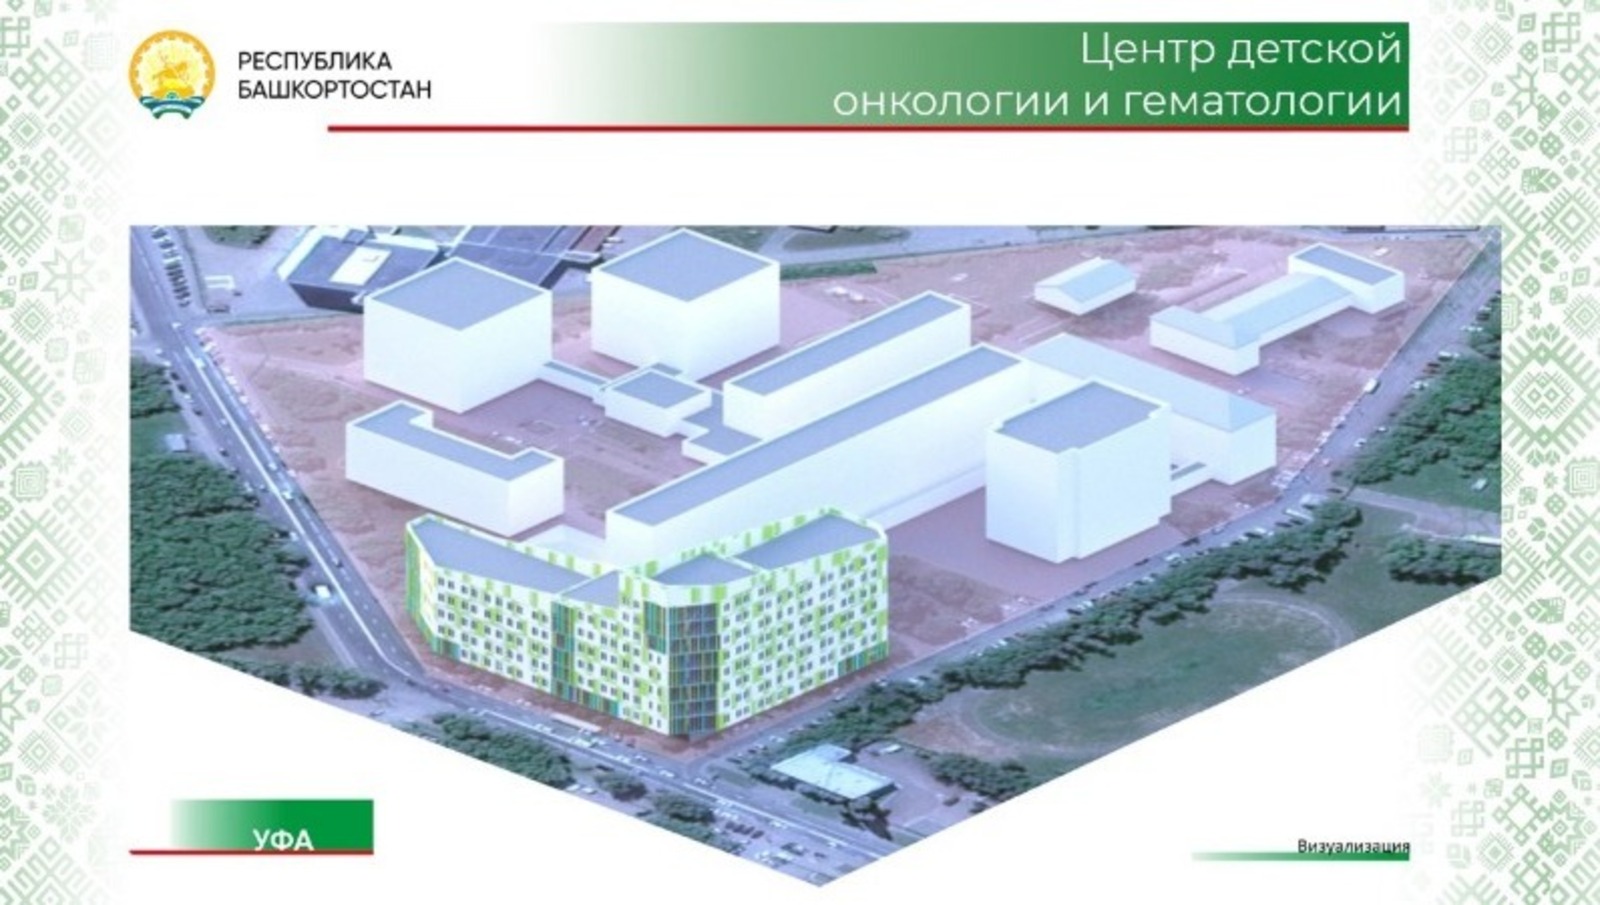 В Уфе завершилось возведение третьего этажа Республиканского центра детской онкологии и гематологии